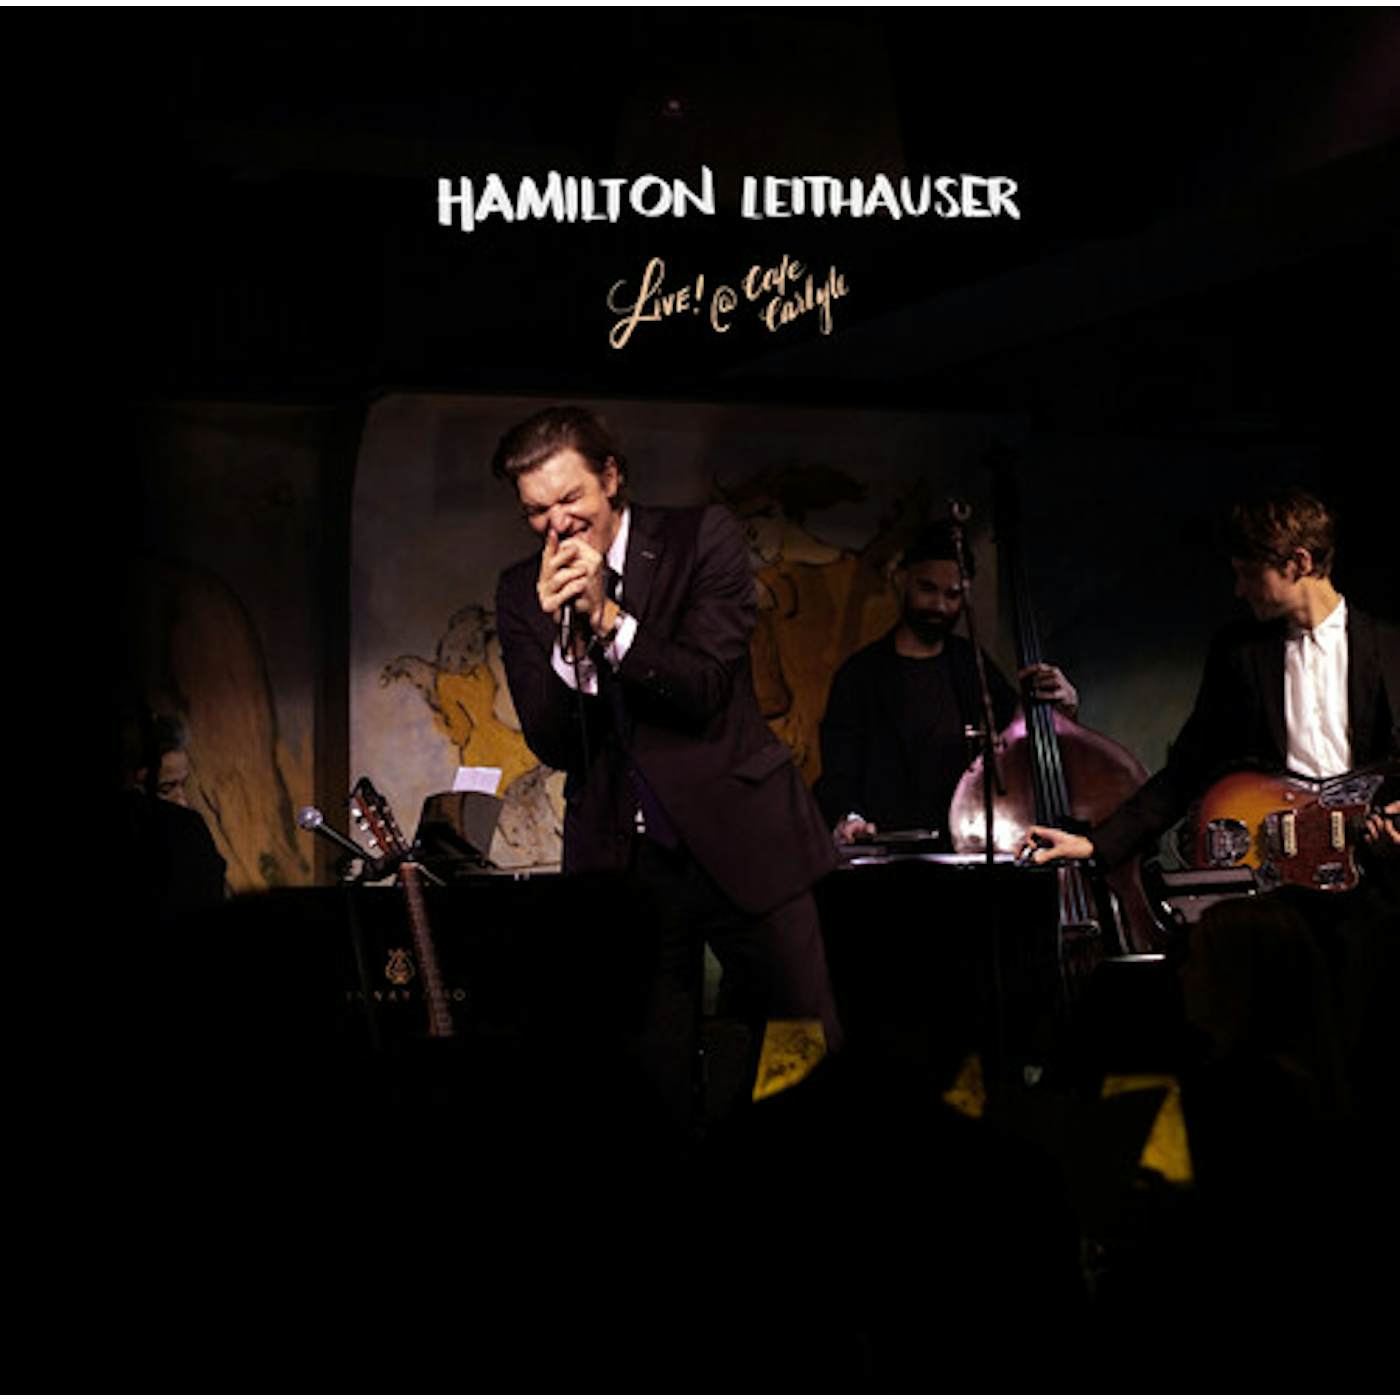 Hamilton Leithauser LIVE! AT CAFE CARLYLE (OPAQUE WHITE VINYL) Vinyl Record